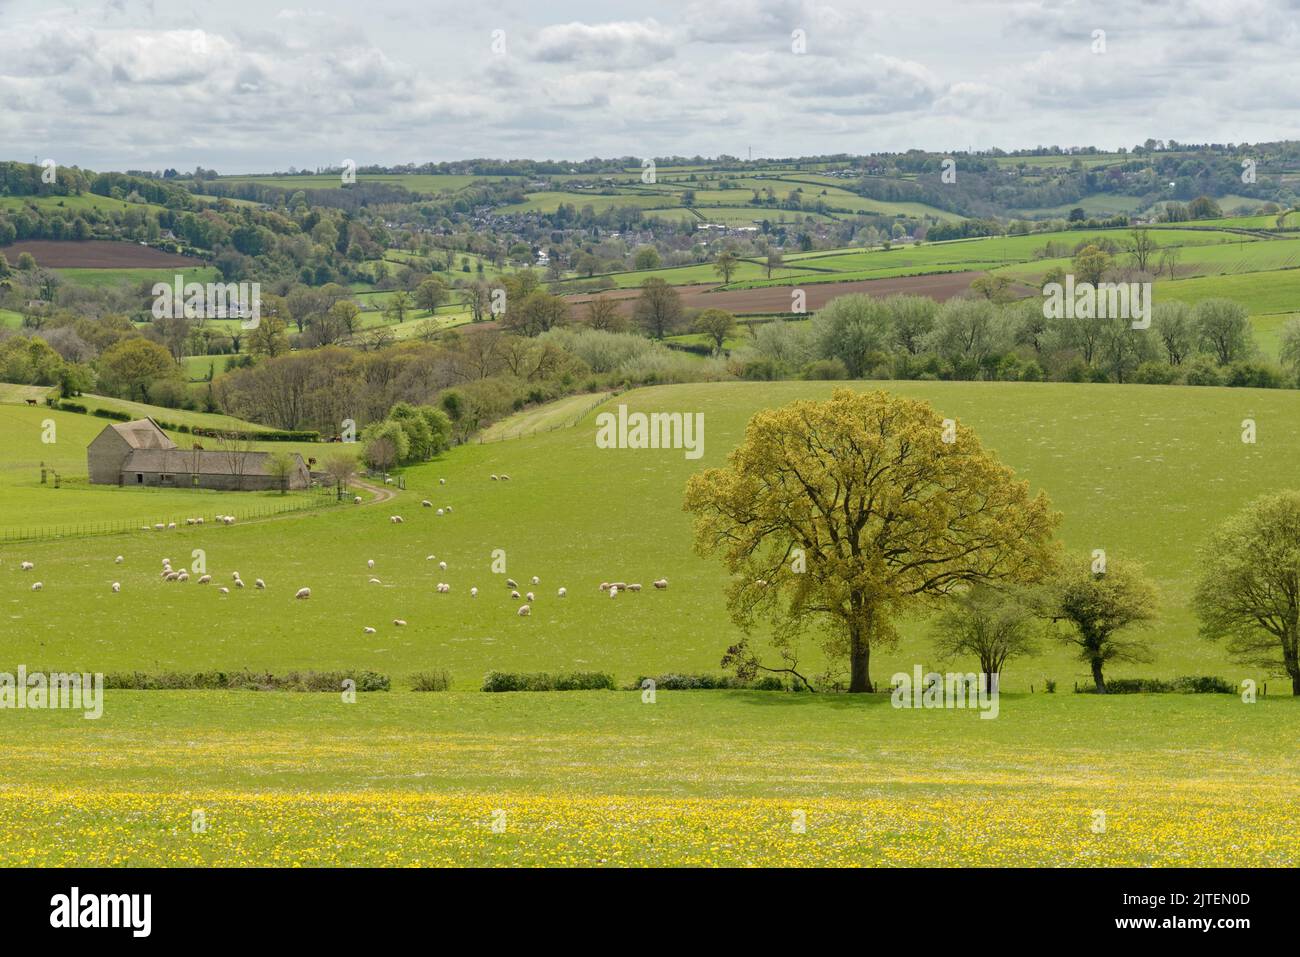 Pecore nazionali (Ovis aries) pascoli pascoli con Box villaggio sullo sfondo, vicino Colerne, Wiltshire, Regno Unito, maggio. Foto Stock